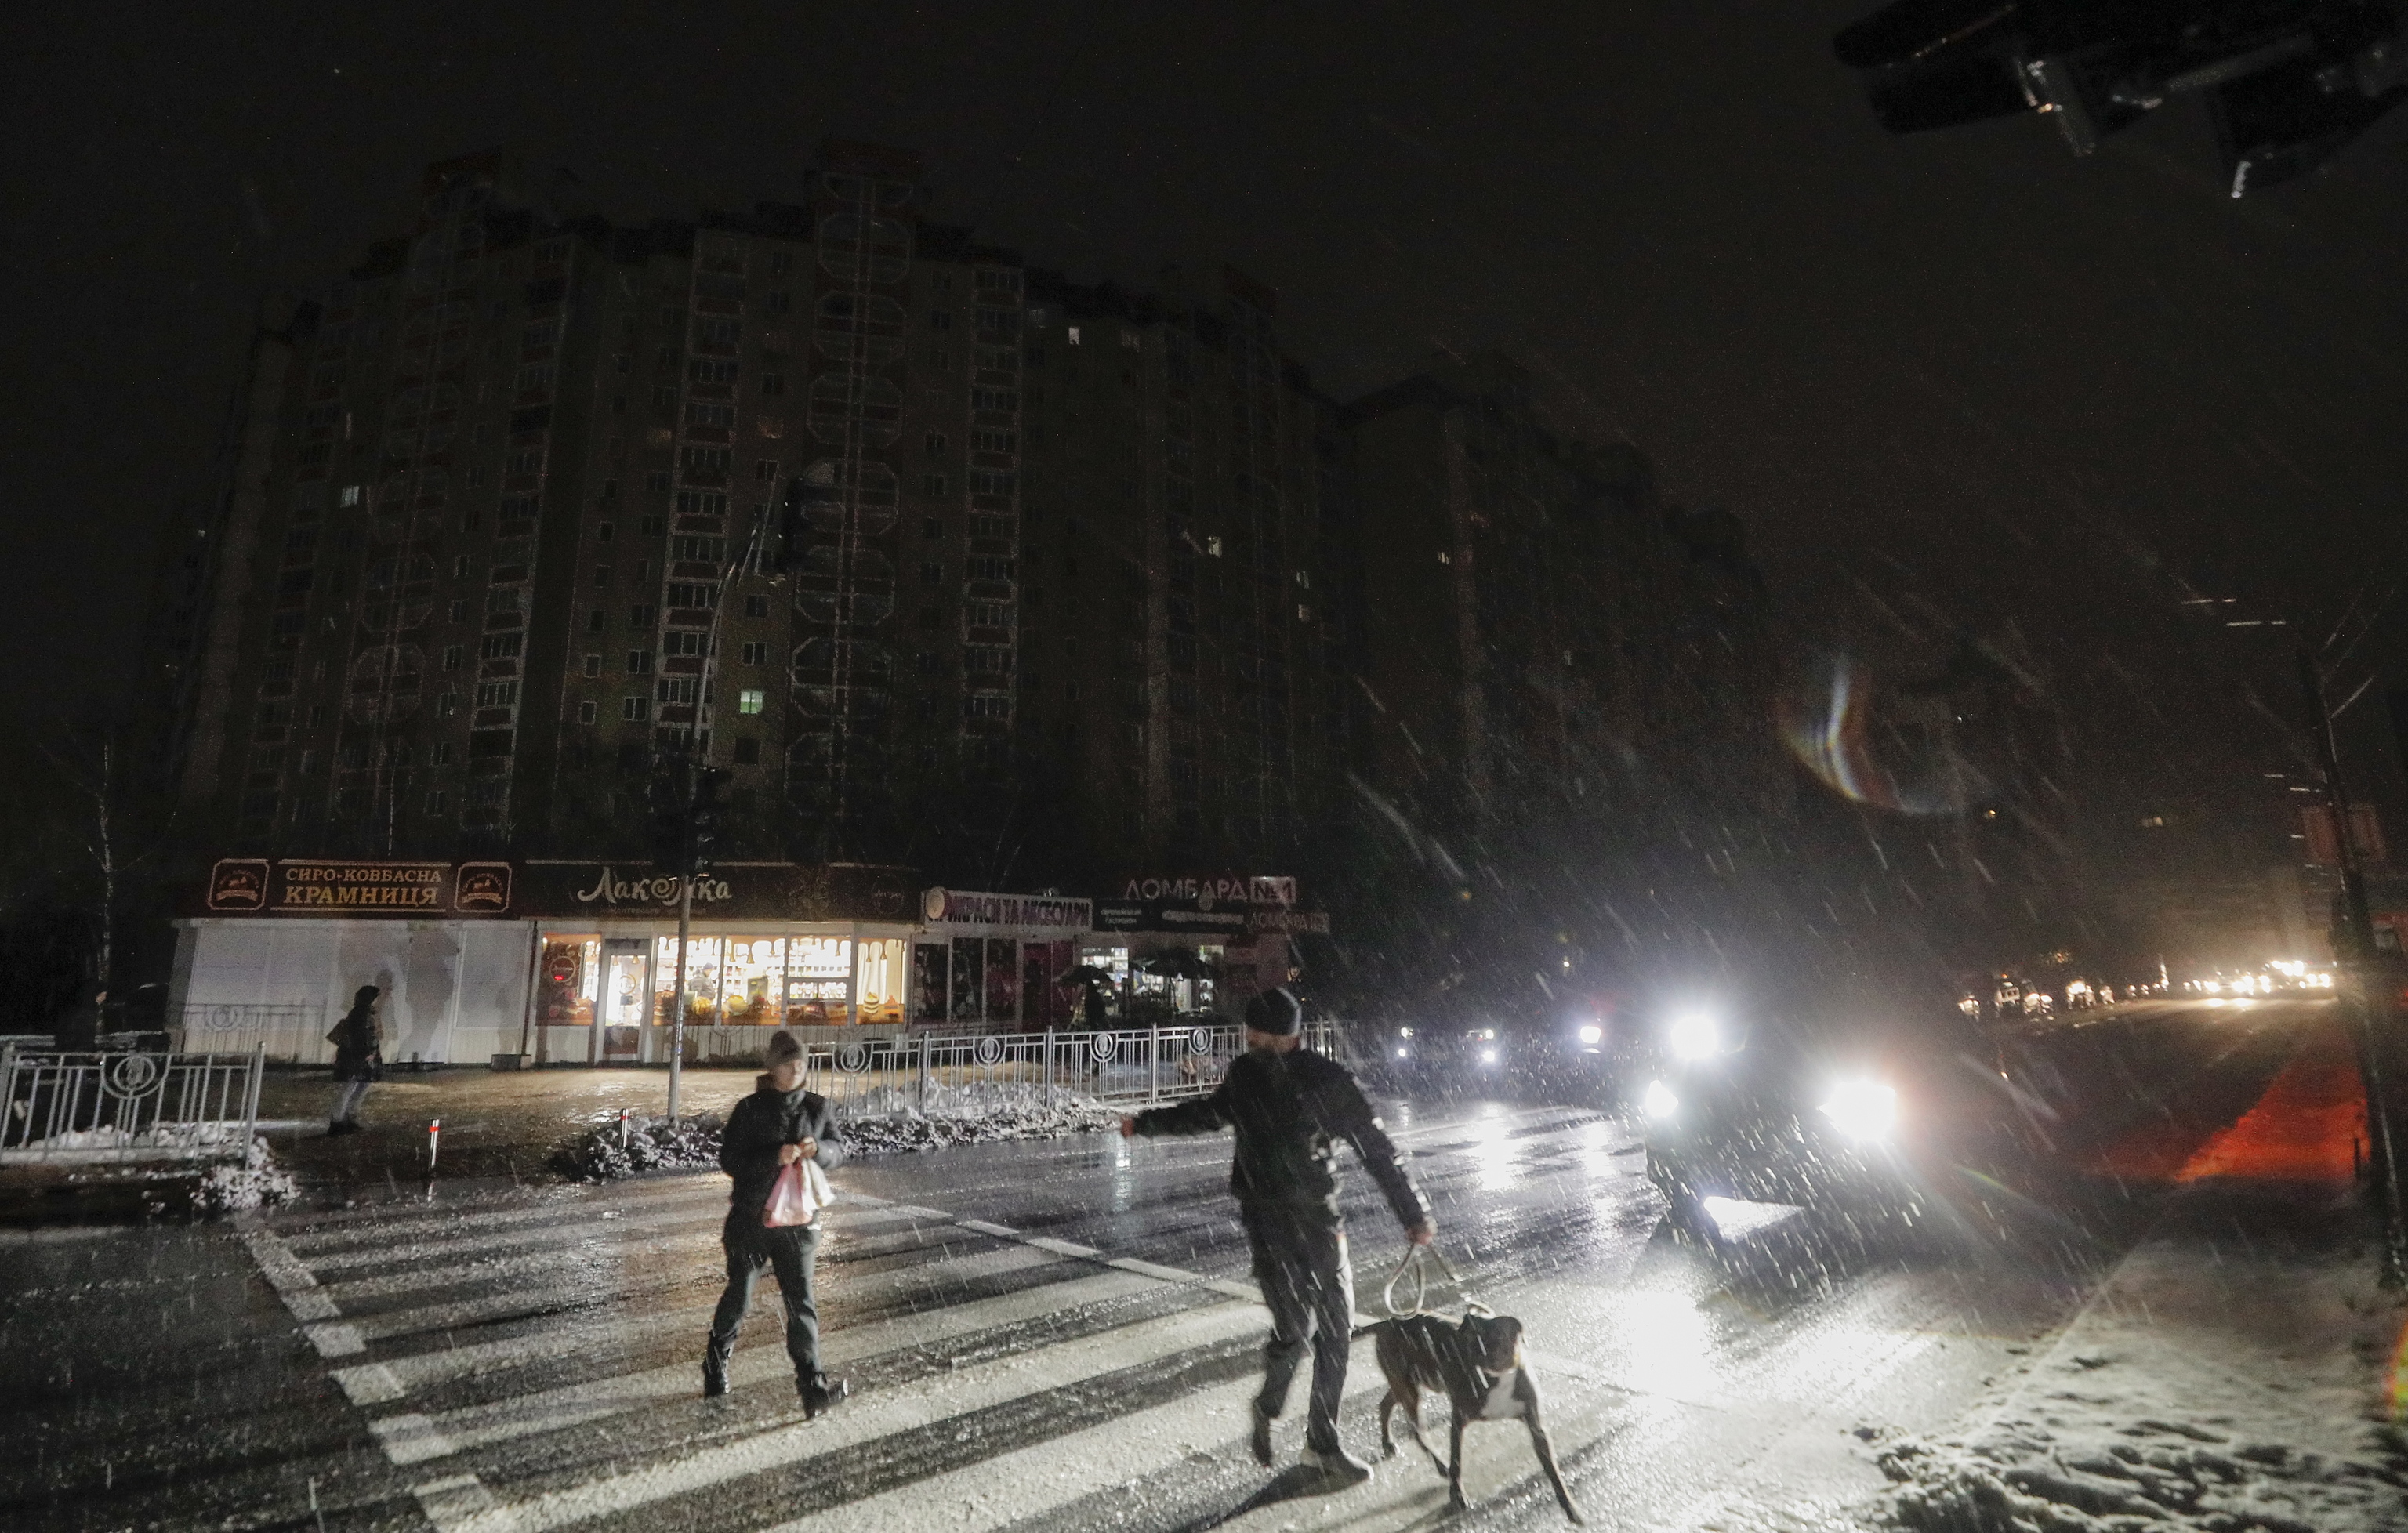 Dark streets in kyiv, a few days ago